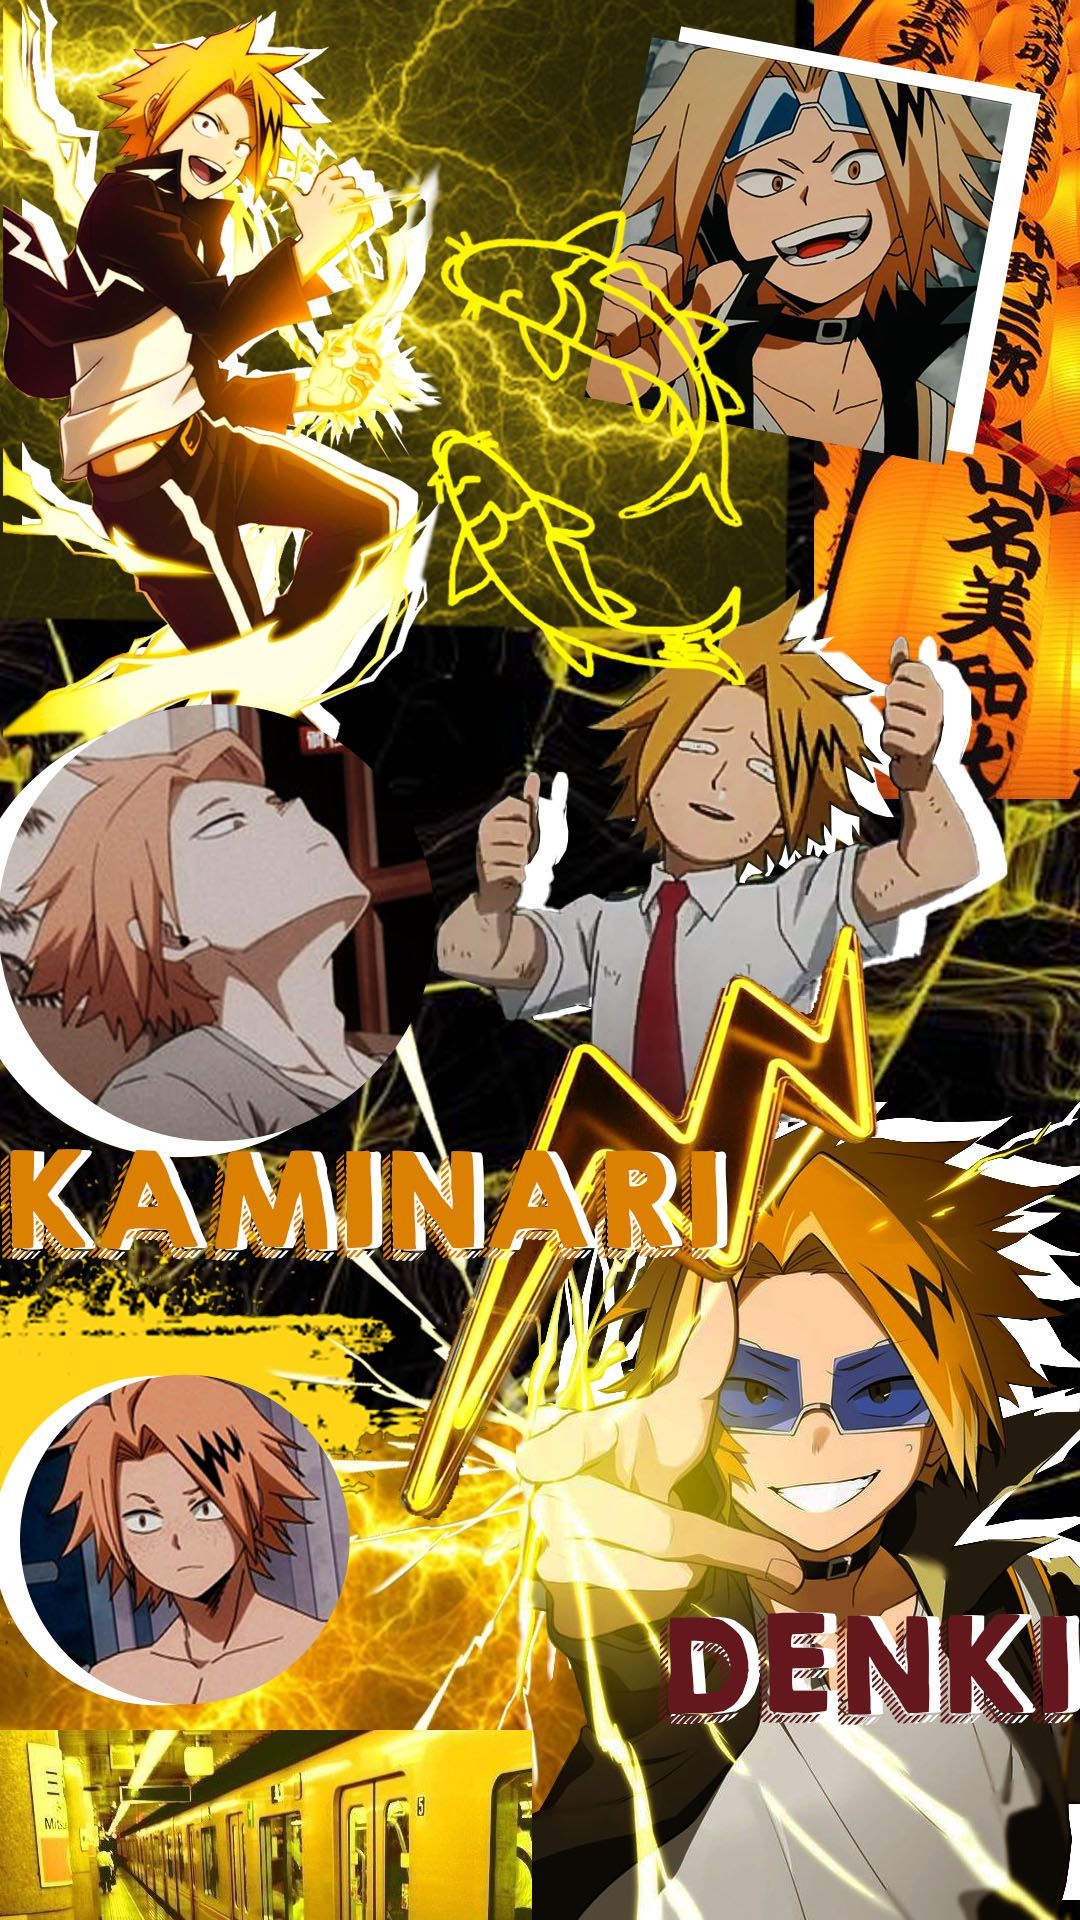 Kaminari Denki collage. Hero wallpaper